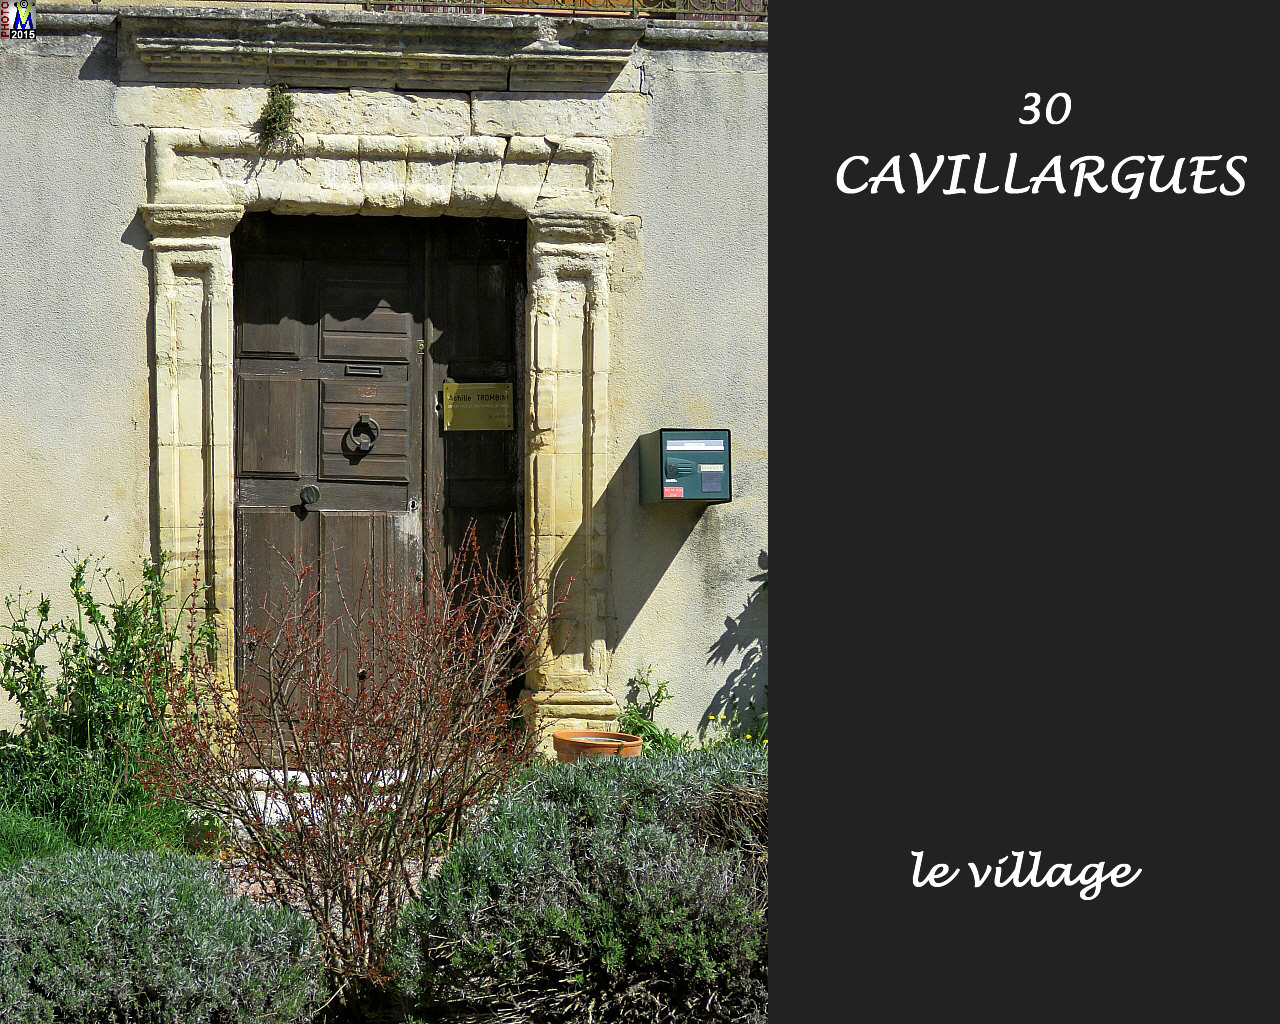 30CAVILLARGUES_village_110.jpg